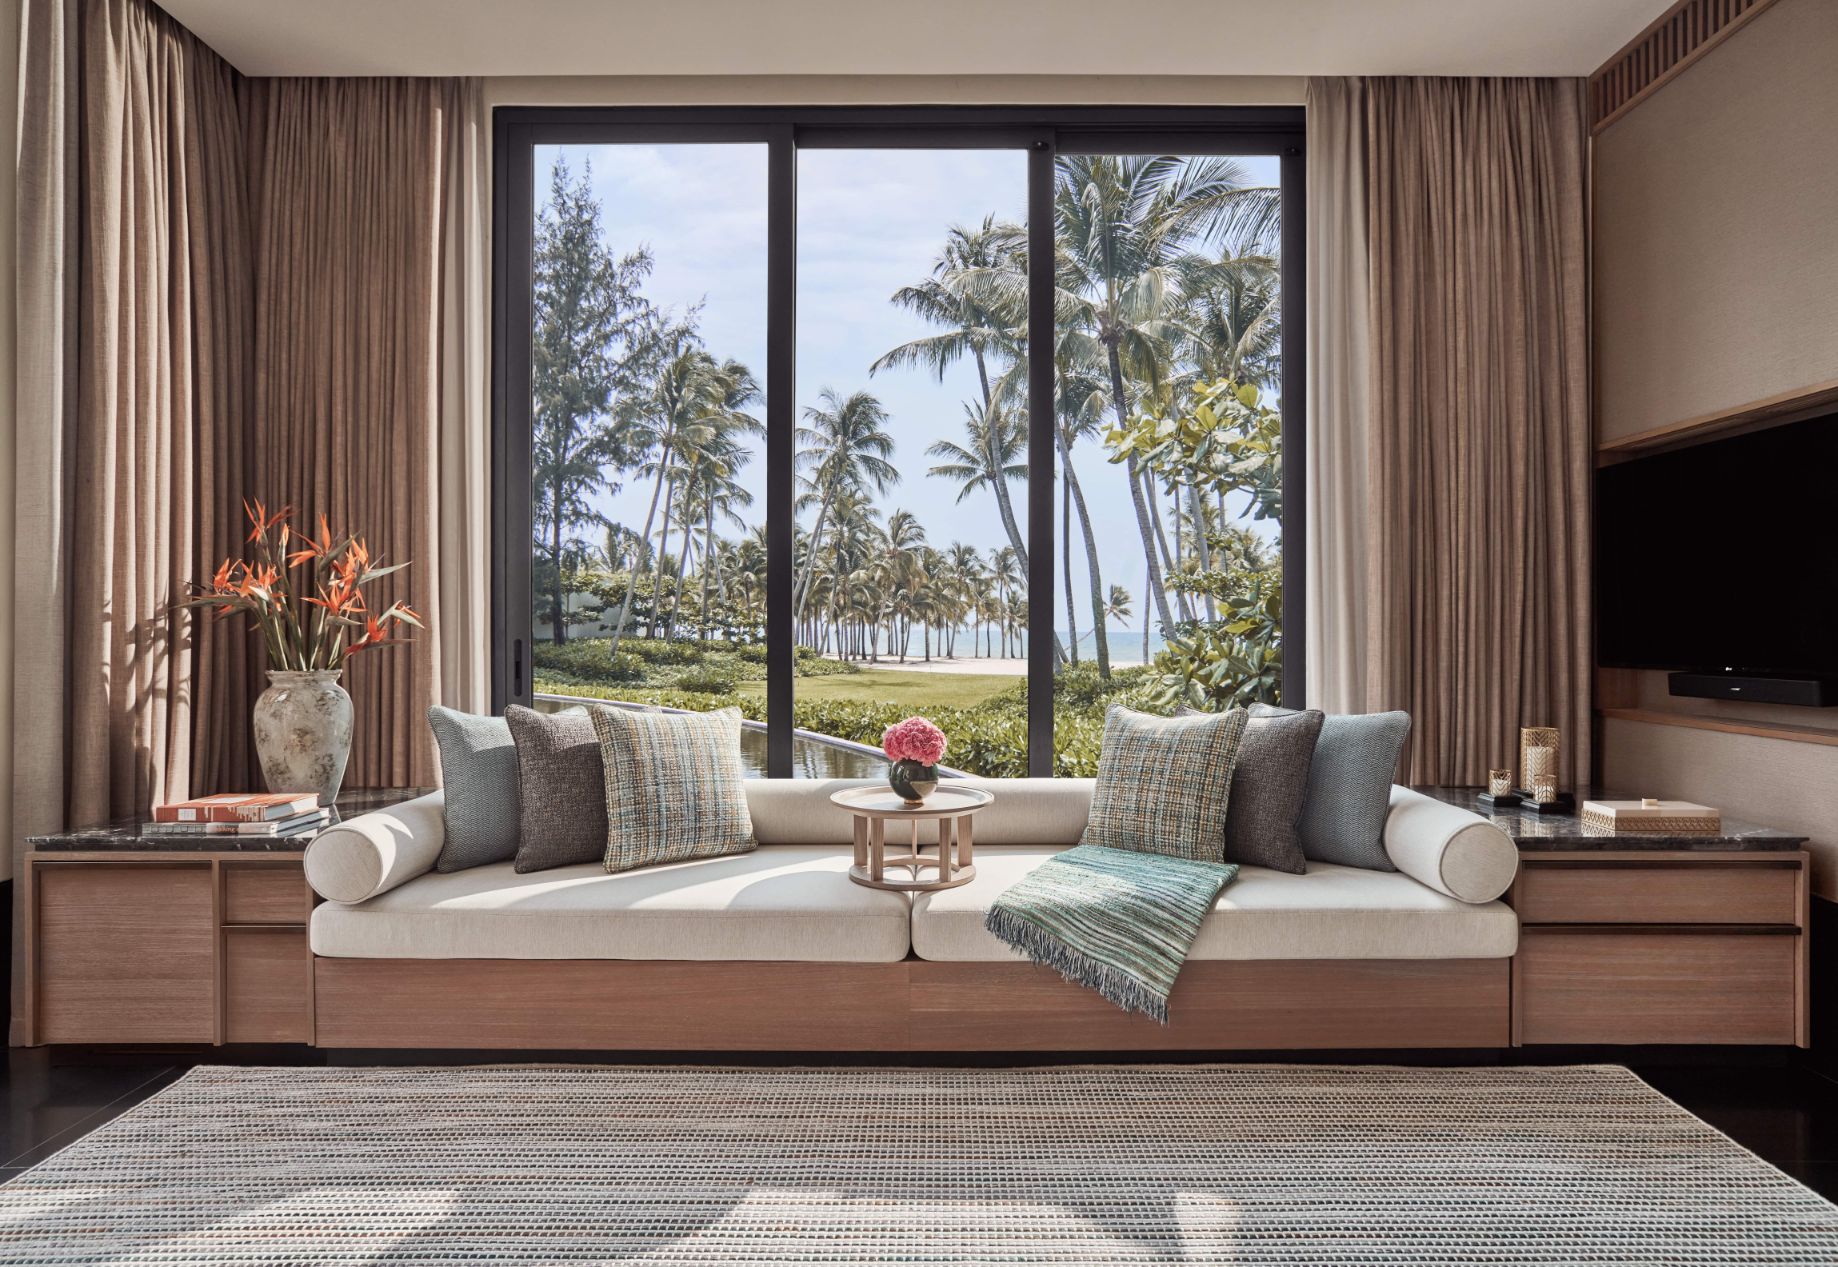 Three Bedroom Lagoon Pool Villa livingroom1 Rời xa bộn bề cuộc sống, trải nghiệm thăng hoa tại Regent Phú Quốc